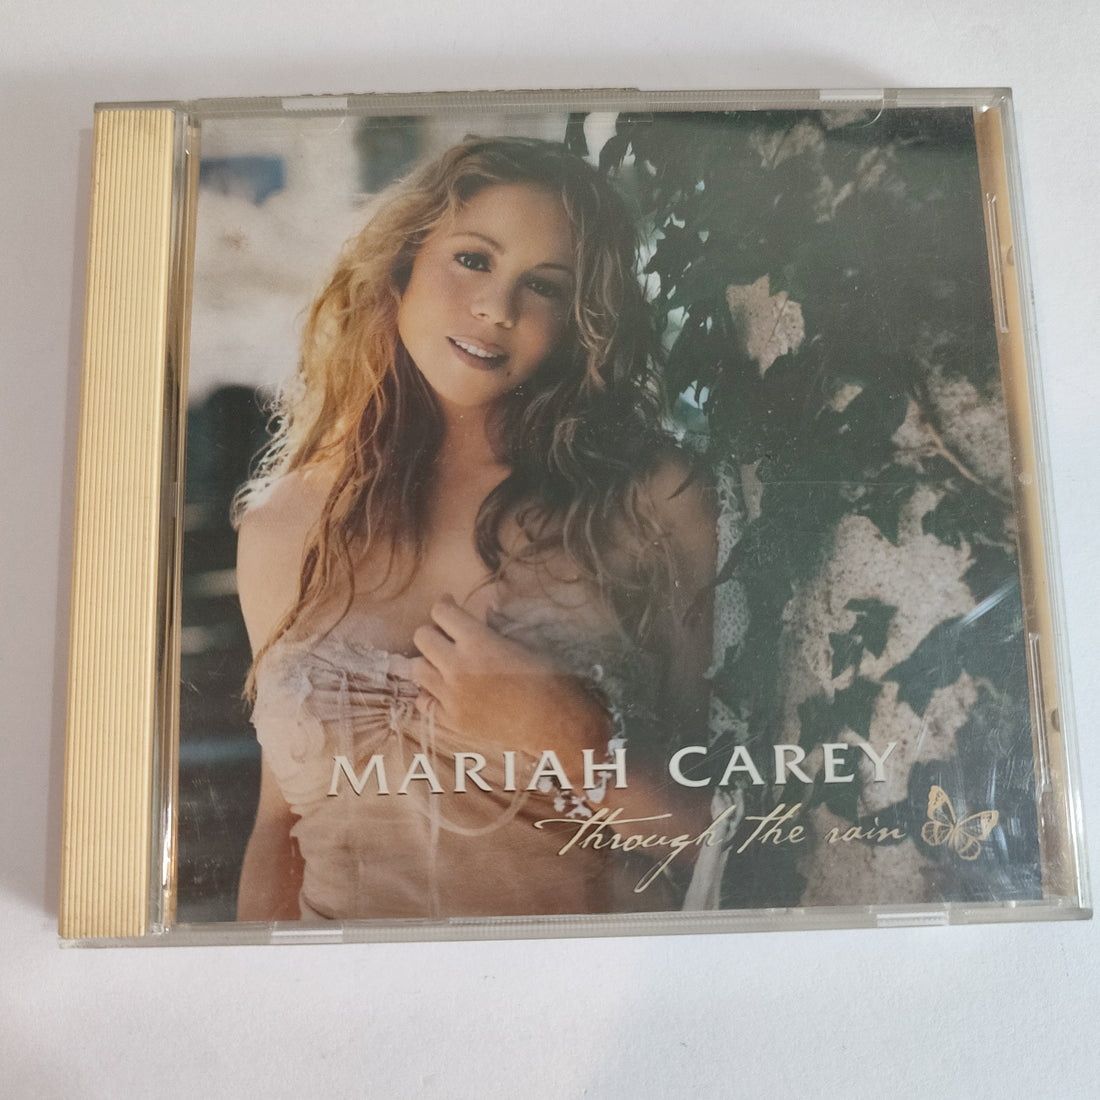 Mariah Carey - Through The Rain (CD) (G+)